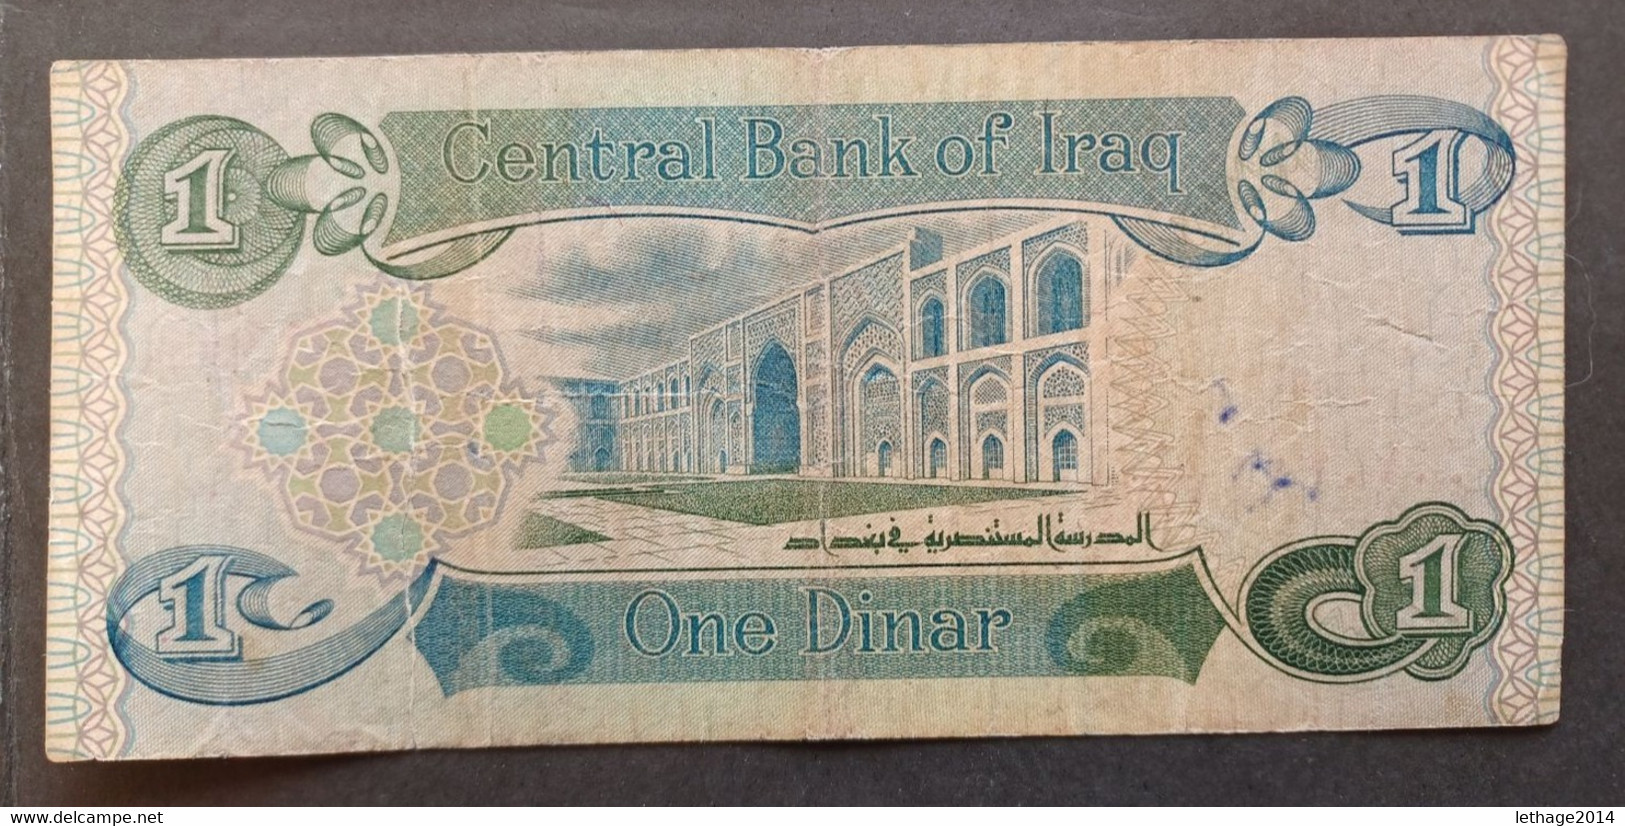 BANKNOTE IRAQ العراق  IRAK 1 DINARS 1984 - Iraq